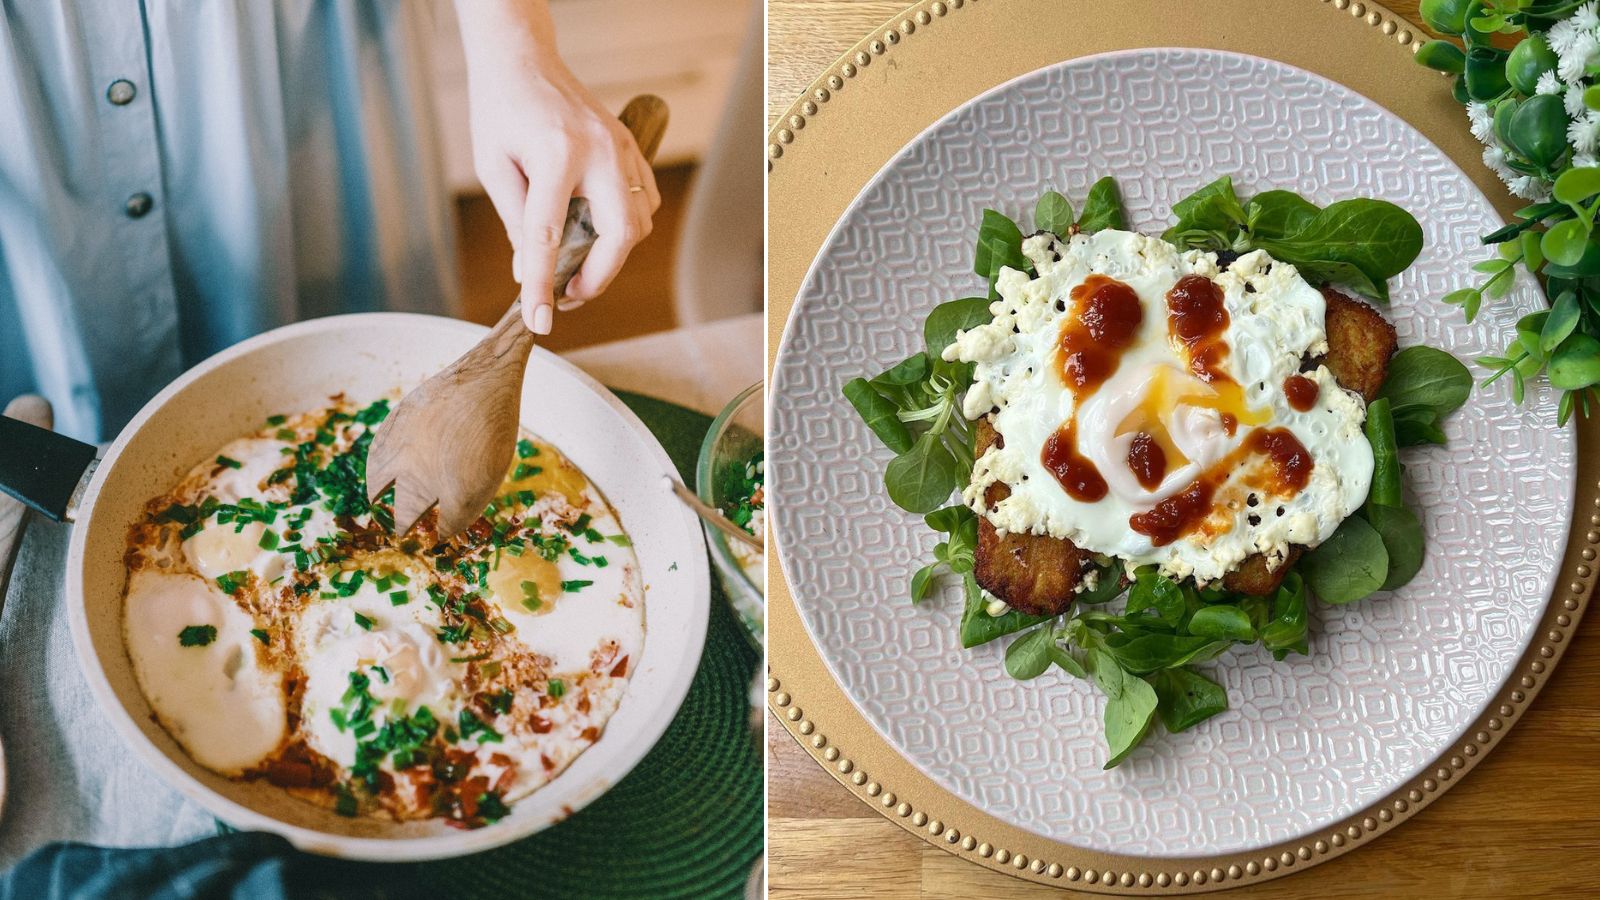 Novi viralni trend za doručak su jaja s feta sirom, evo kako ih napraviti